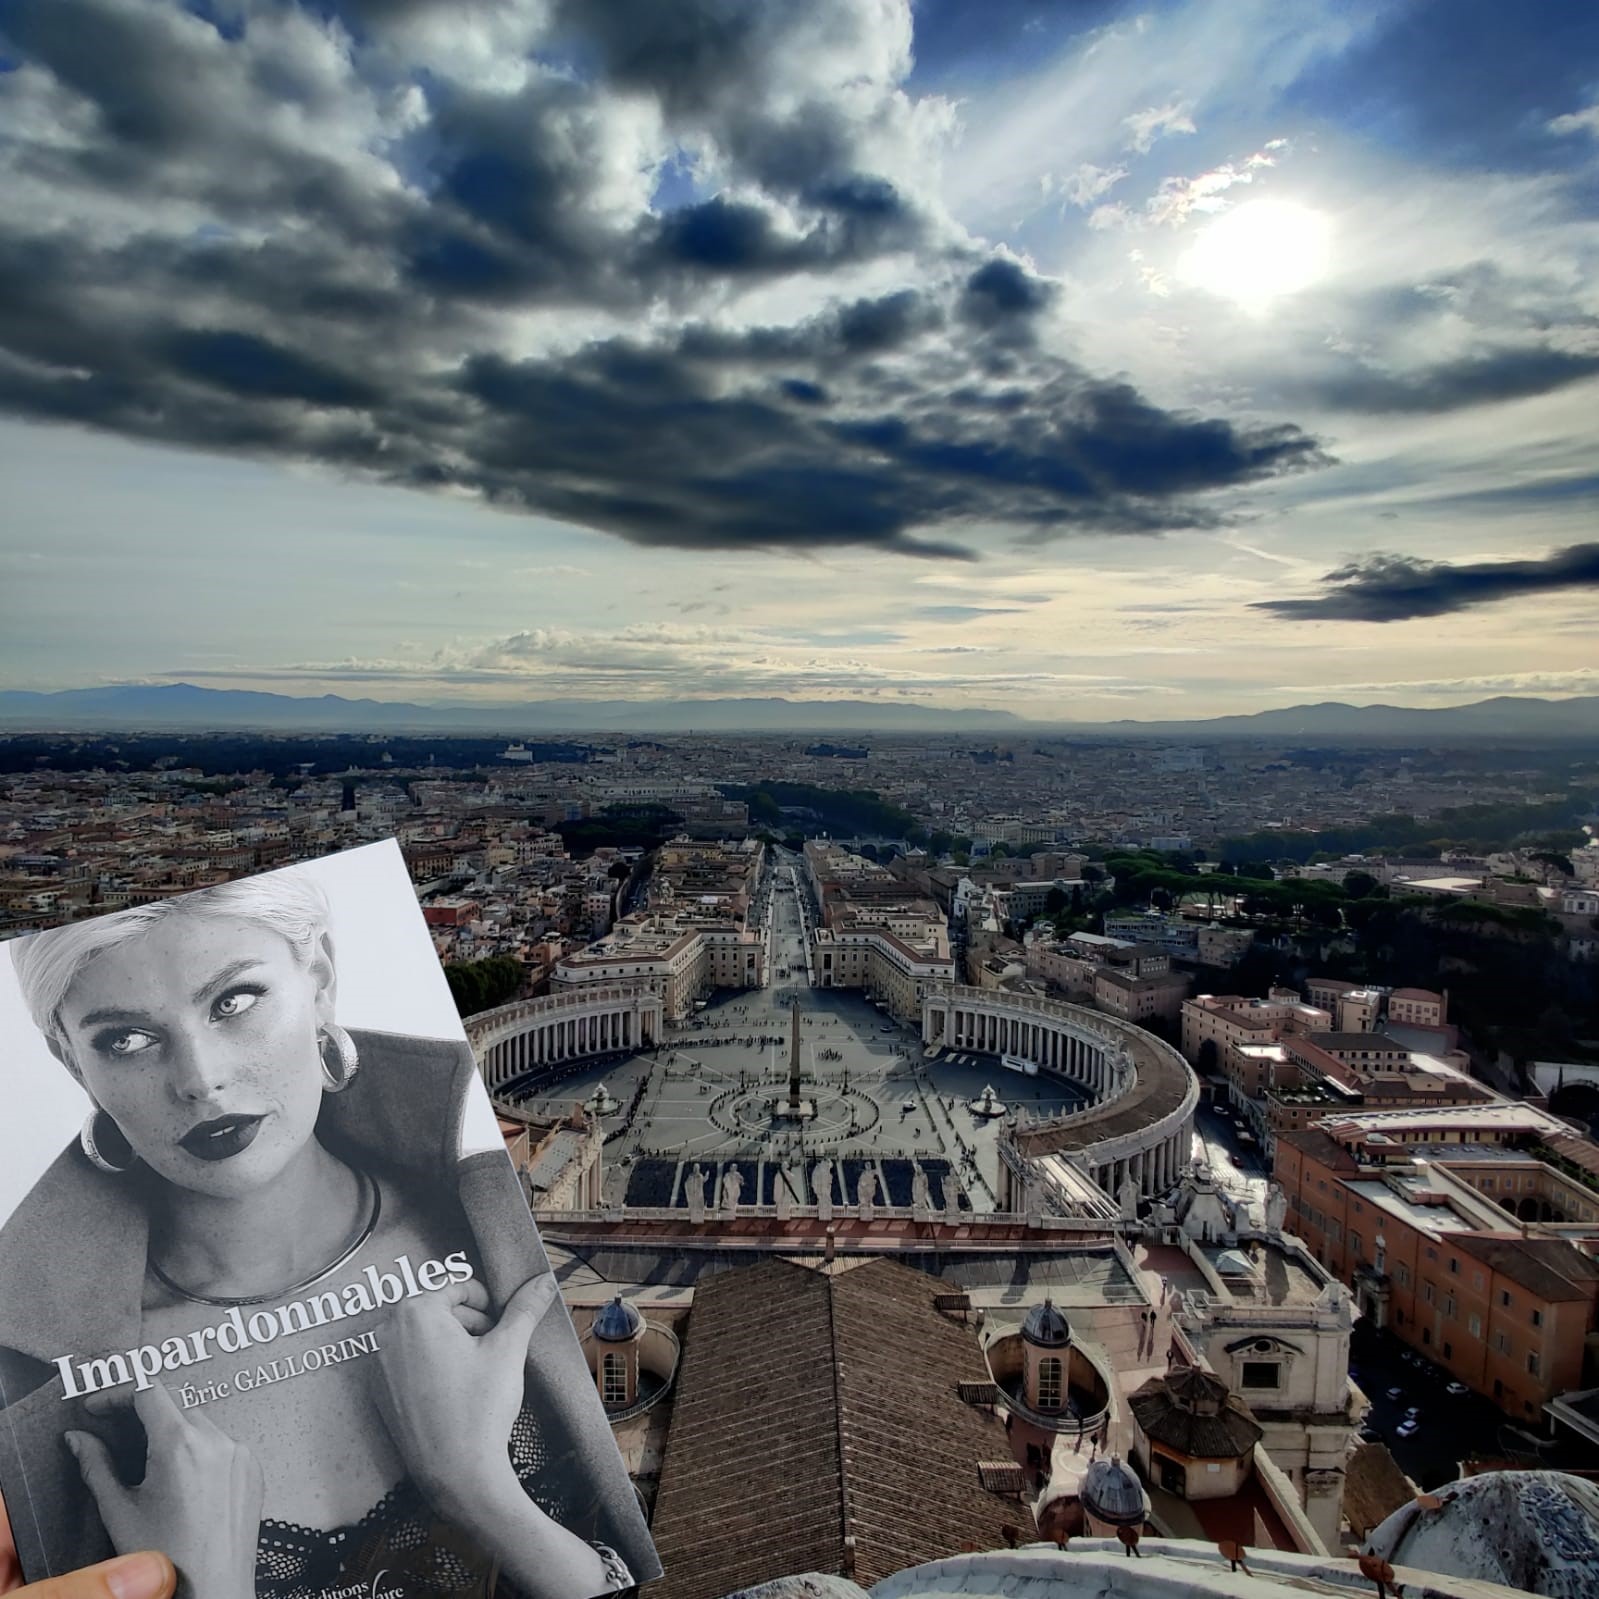 Impardonnables au dessus du Vatican... Anaïs.